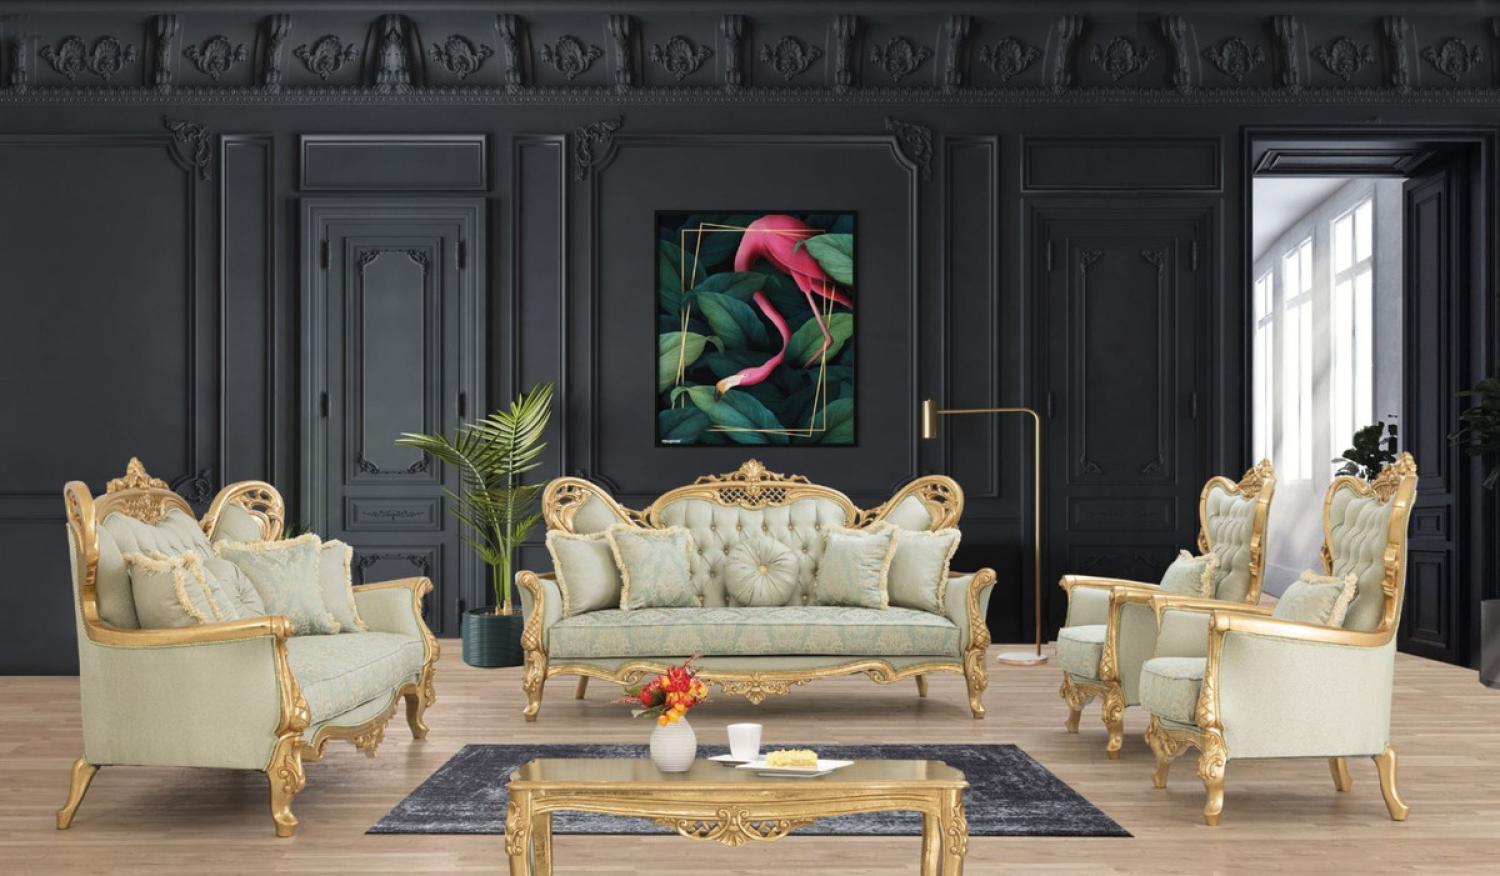 Casa Padrino Luxus Barock Wohnzimmer Set Hellgrün / Gold - 2 Sofas & 2 Sessel & 1 Couchtisch - Handgefertigte Barock Wohnzimmer Möbel - Edel & Prunkvoll Bild 1